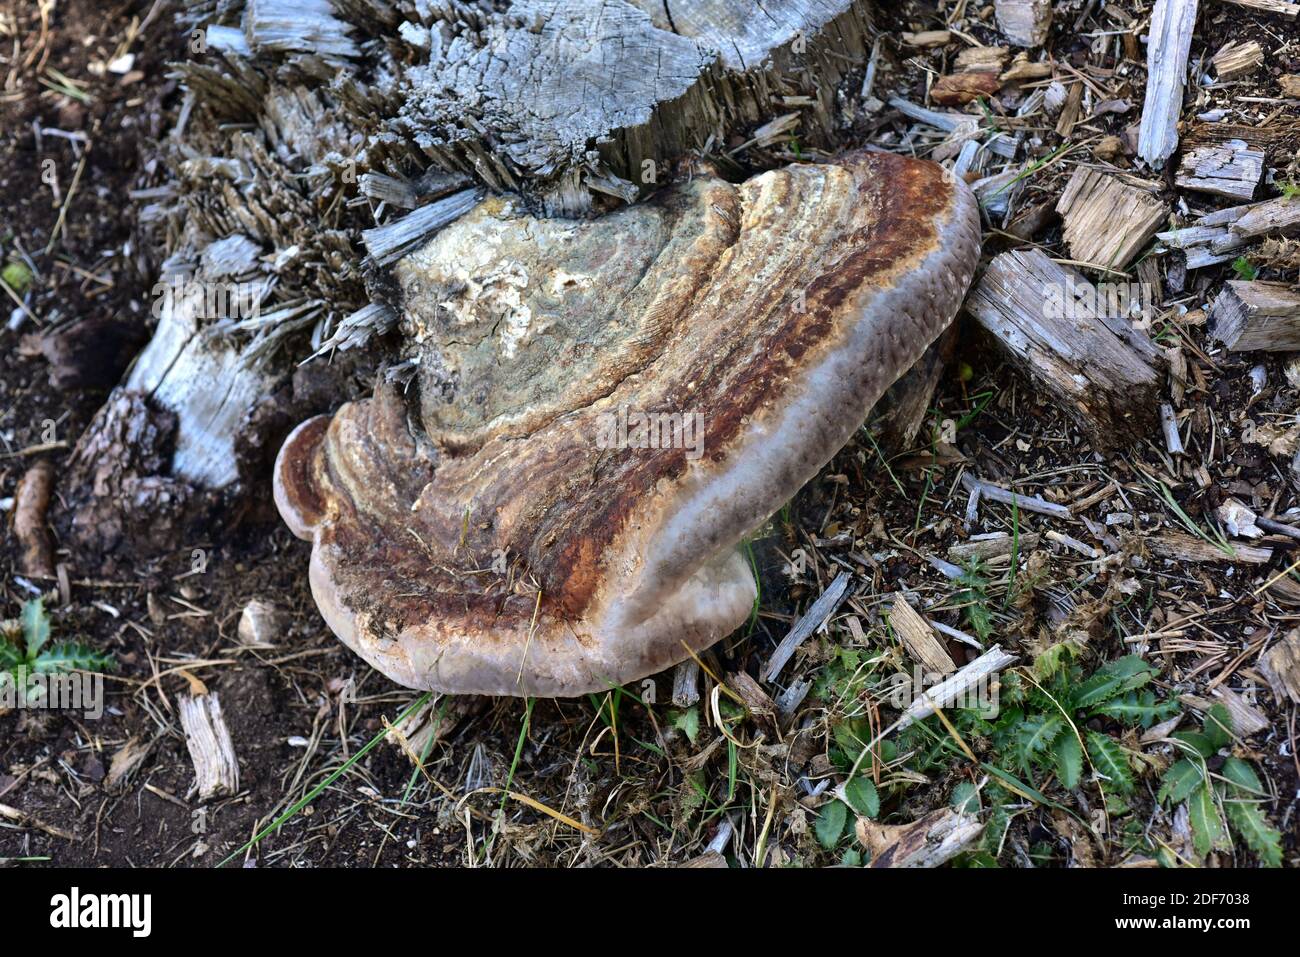 El conk rojo del cinturón (Fomitopsis pinicola) es un parásito del hongo o saprófito del tronco de los pinos. Esta foto fue tomada cerca de Cantavieja, provincia de Teruel, Aragón, Foto de stock